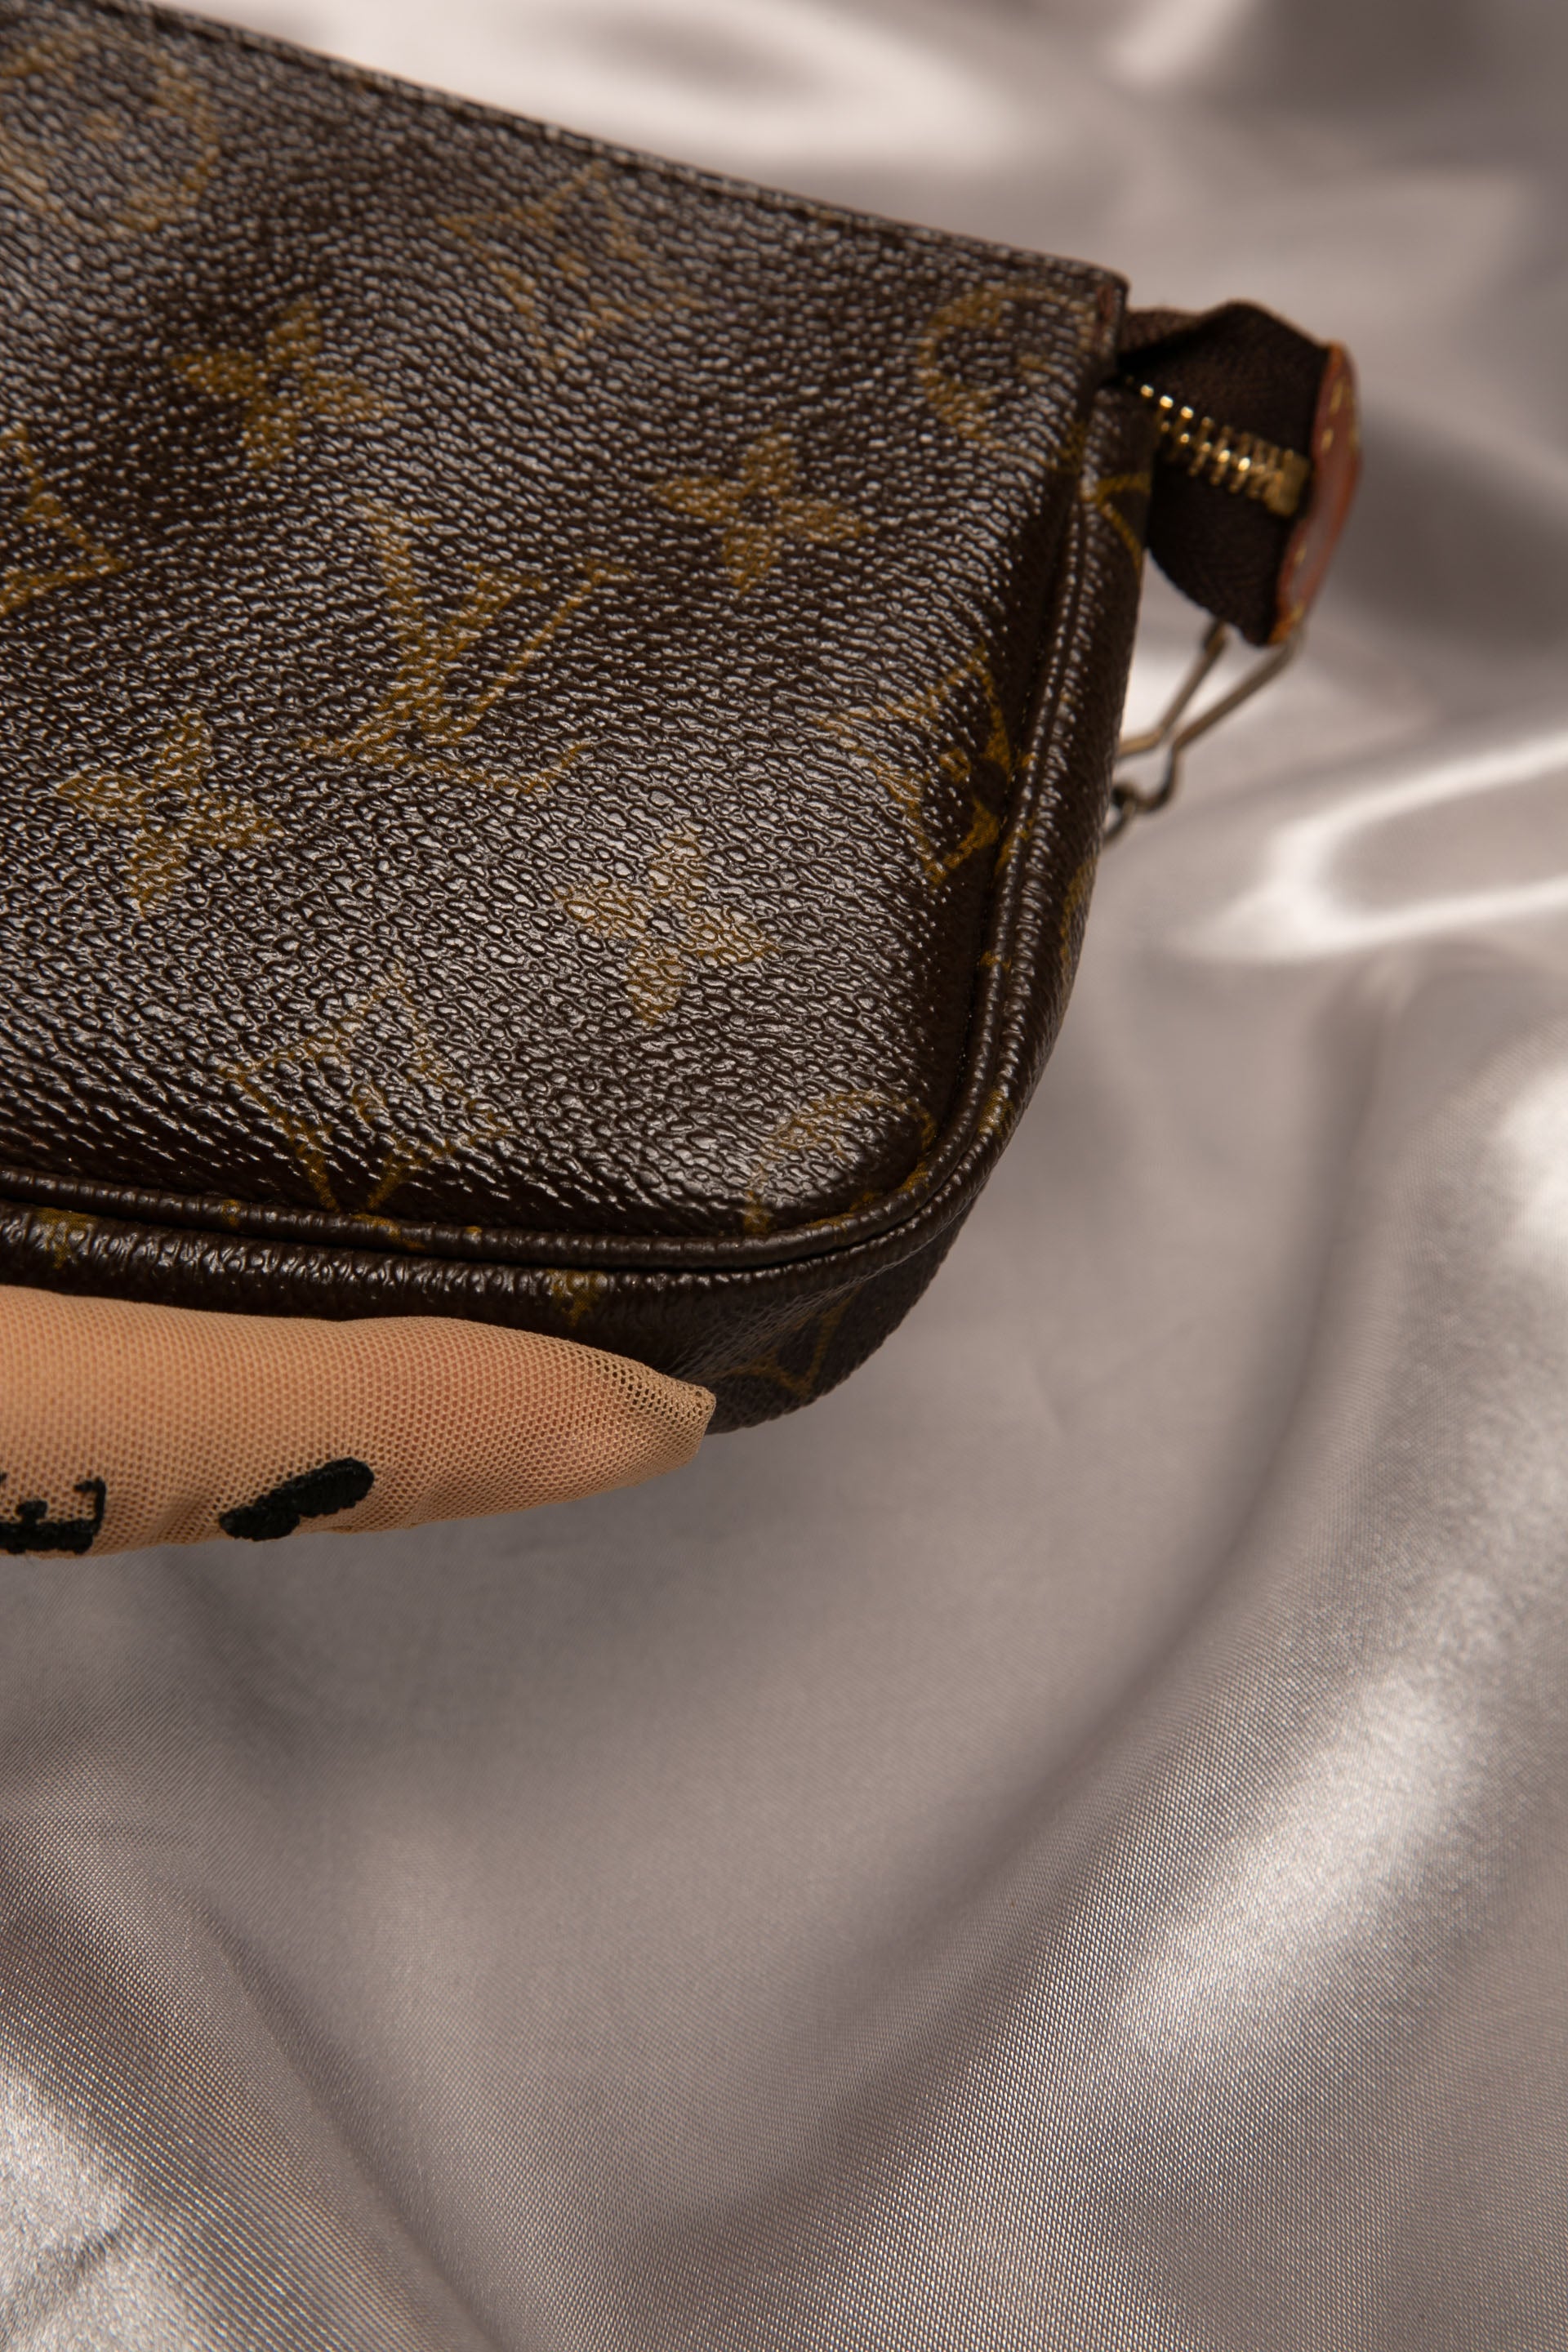 Louis Vuitton Pochette Accessoires, 7 ways to wear/ style your pochette